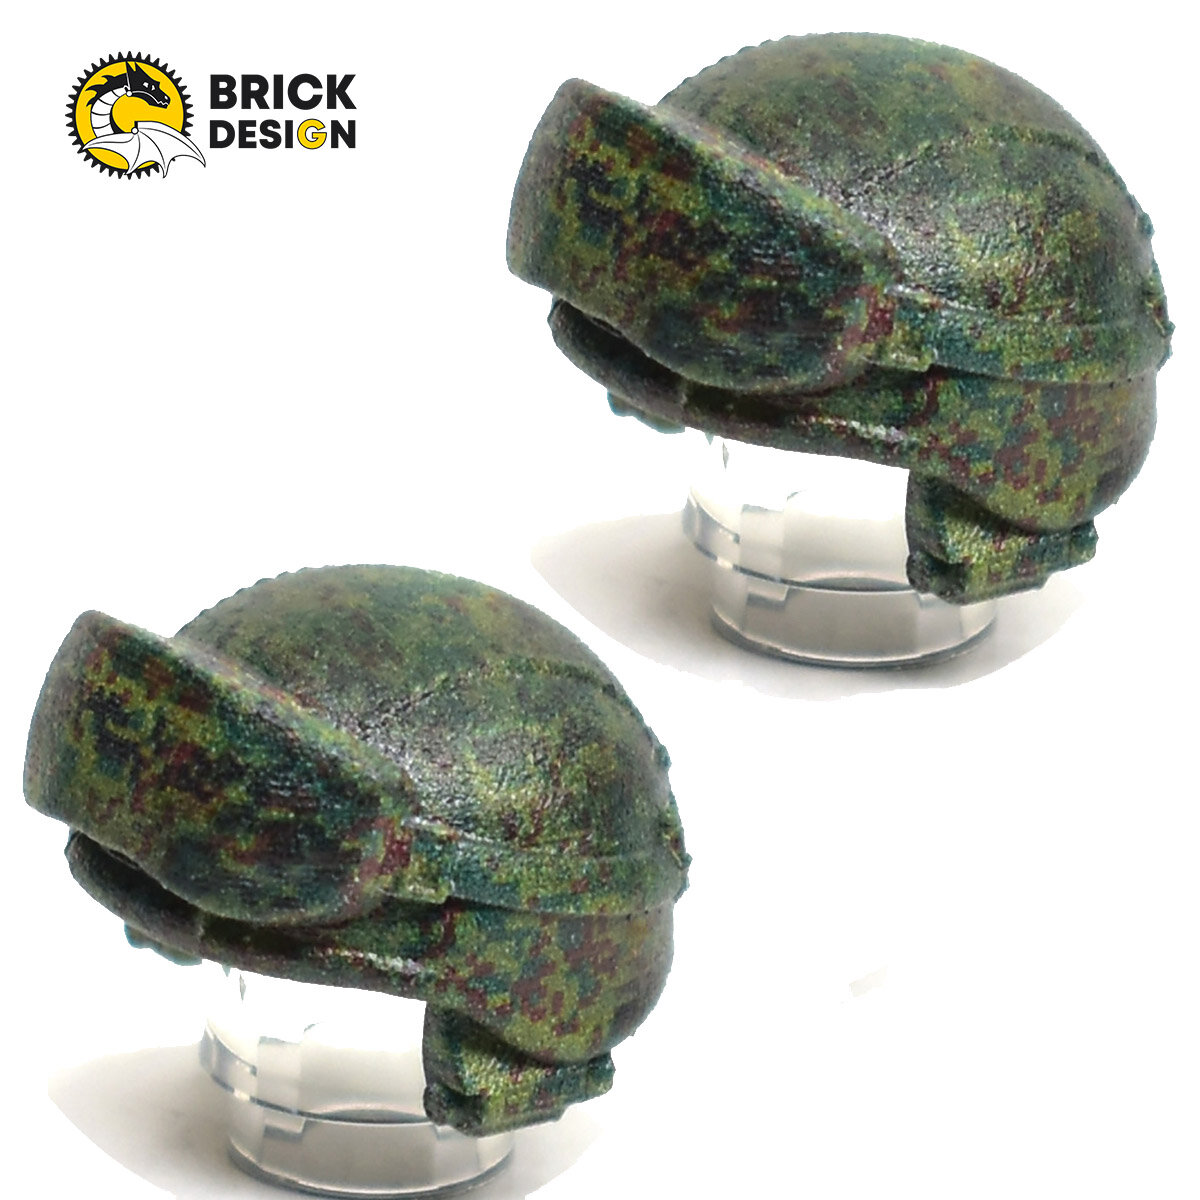 Аксессуары для фигурок лего G BRICK DESIGN, Шлем 6Б47 "Ратник" пиксельный камуфляж с наушниками. набор деталей 2 шт.